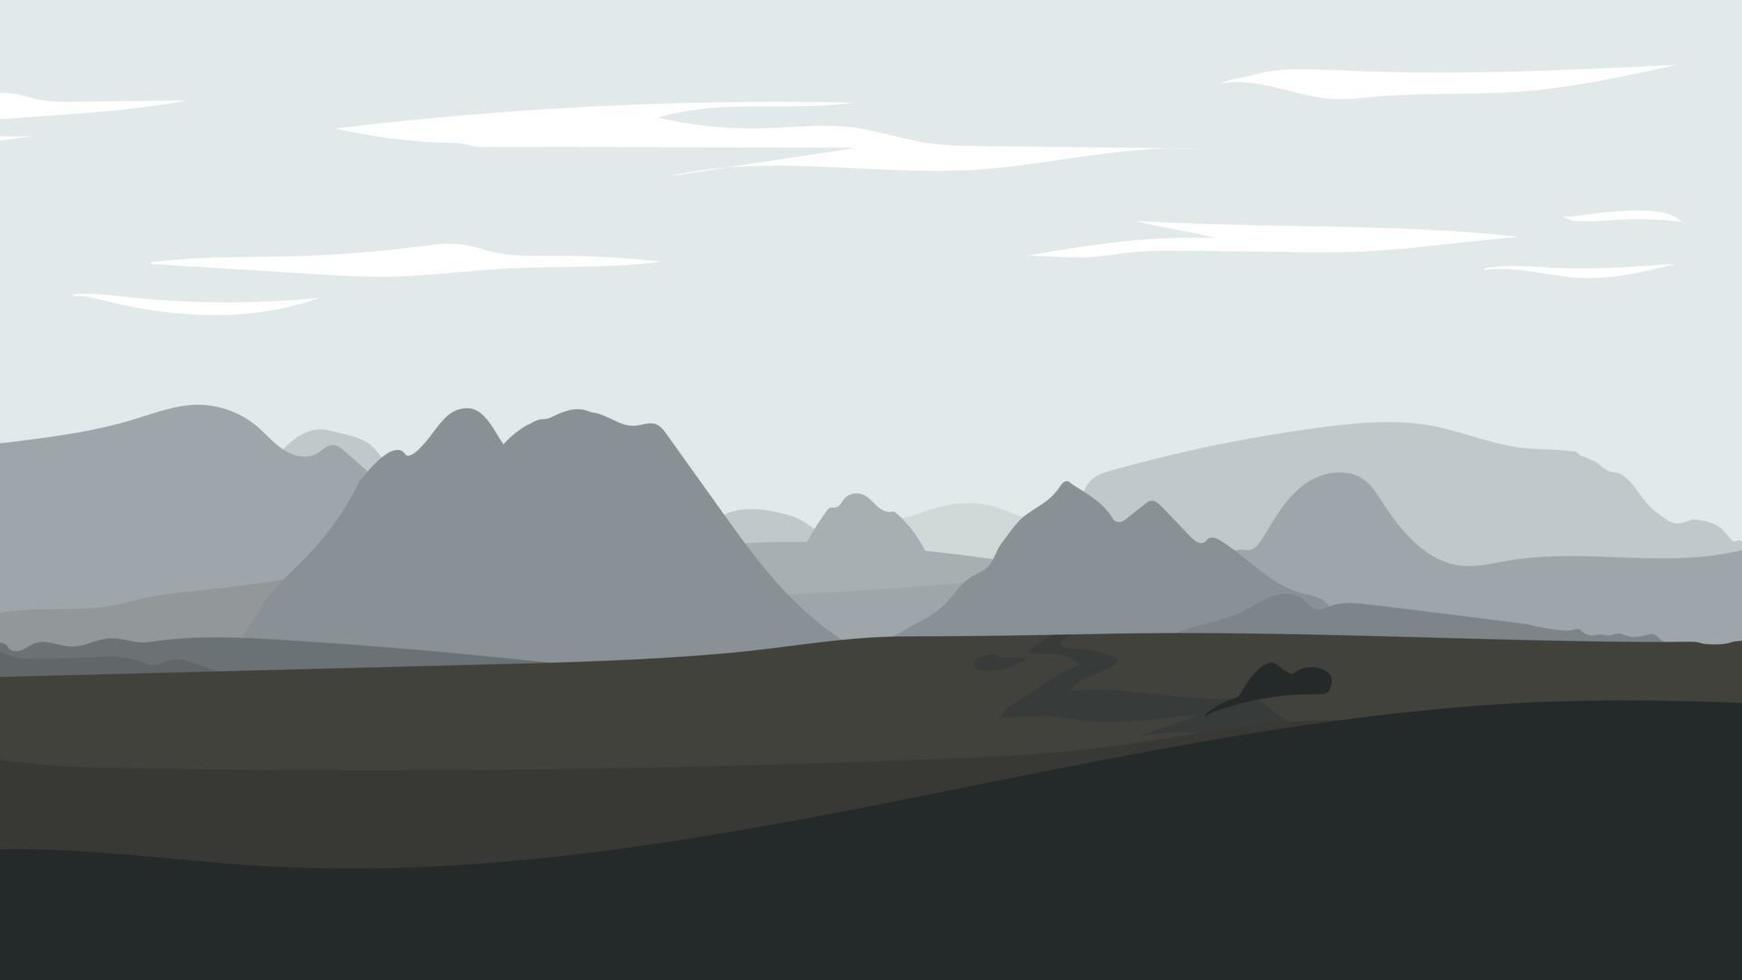 paisaje con desierto con rocas y montañas. vector